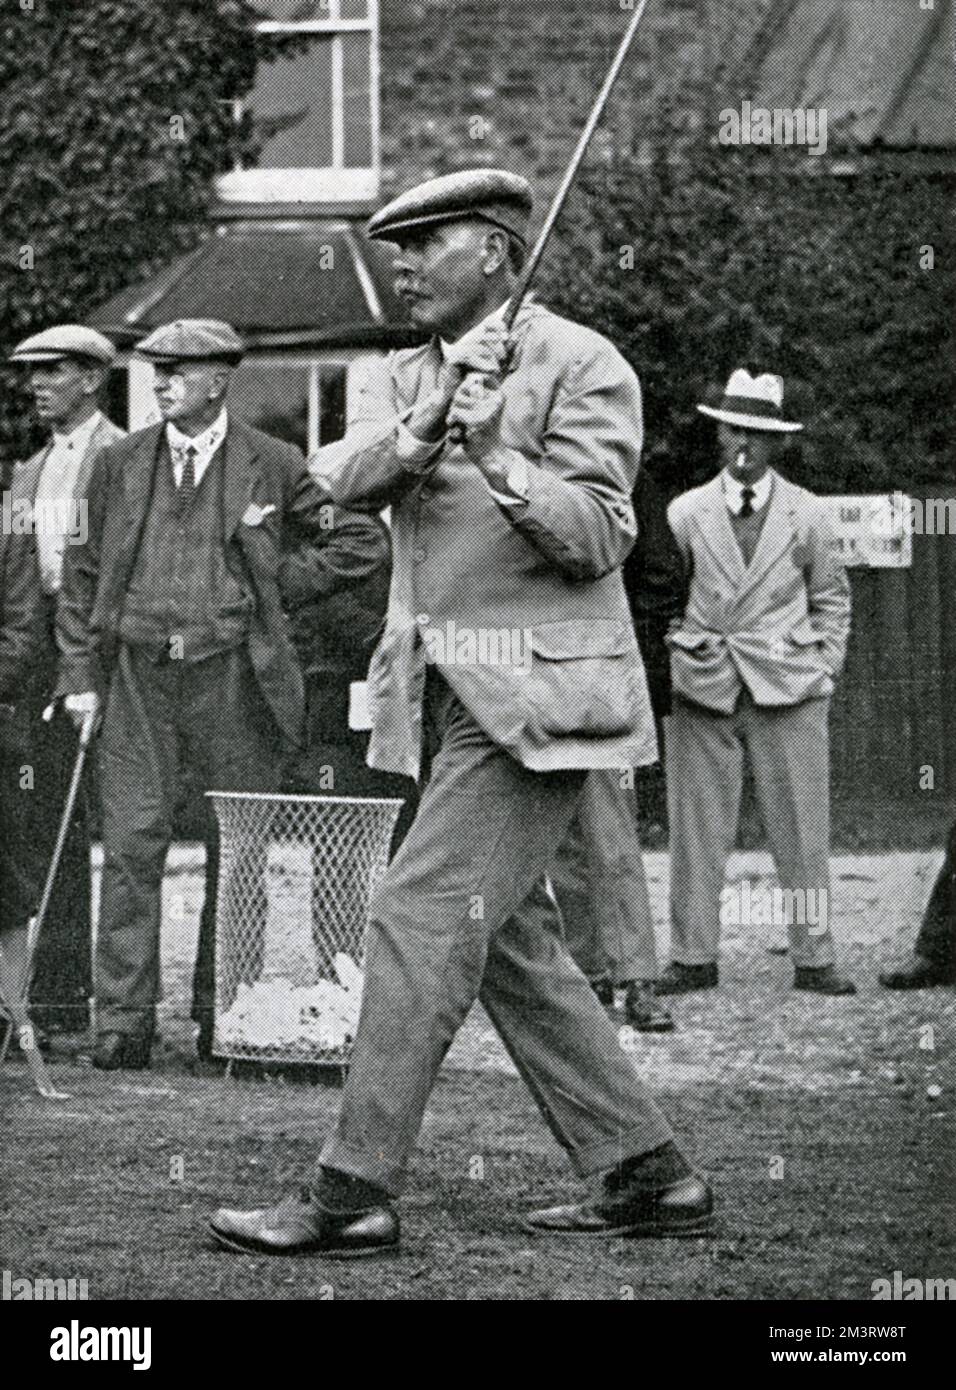 Le golfeur James Braid de Walton Heath Golf Club en action, dans le cadre d'un article "joueurs qui ont fait l'histoire du golf" 1934 Banque D'Images